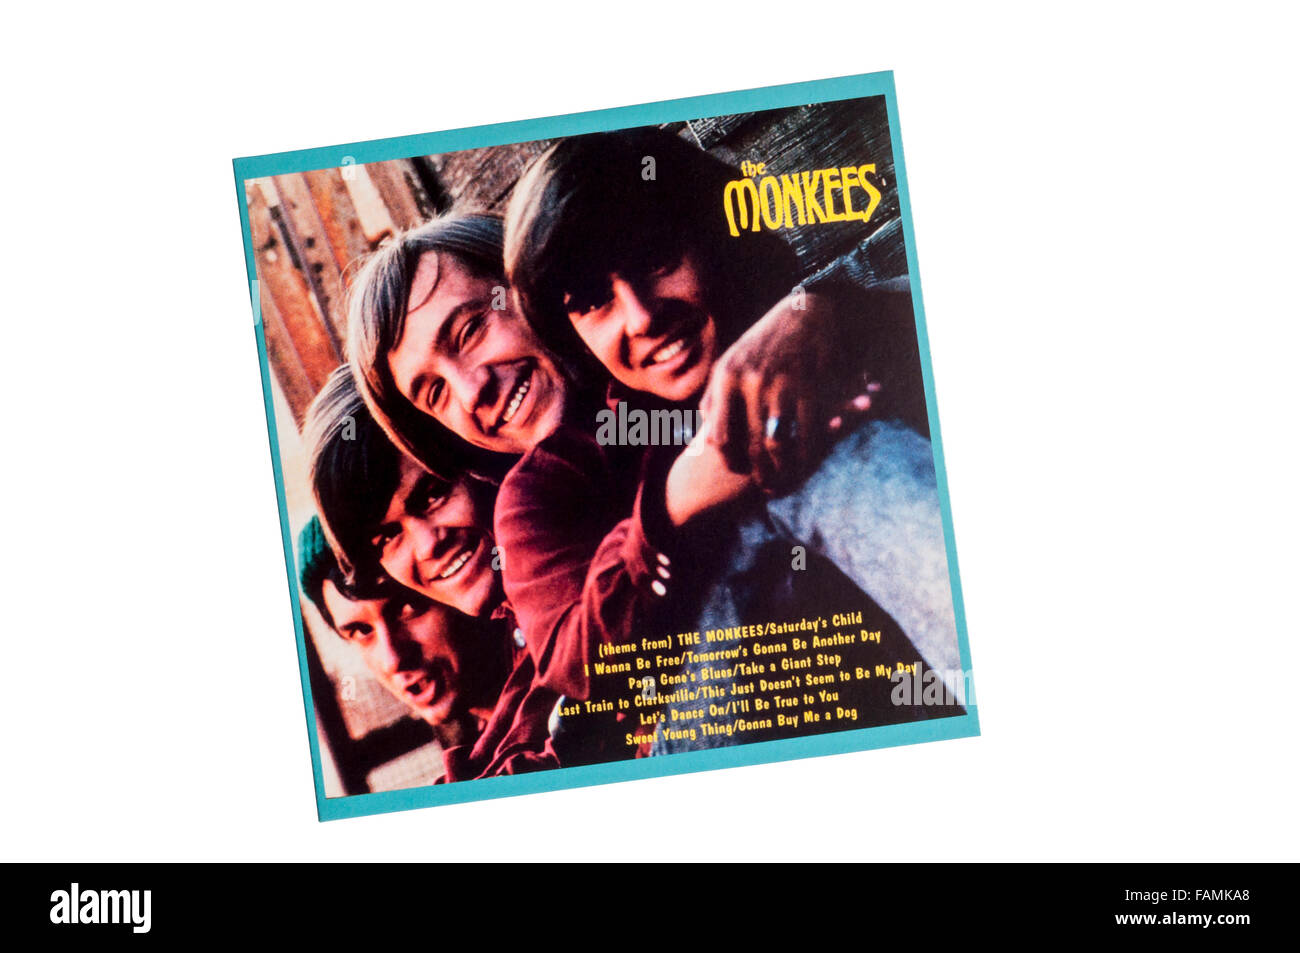 Il Monkees era il primo omonimo album per la band Monkees. Rilasciato nel 1966. Foto Stock